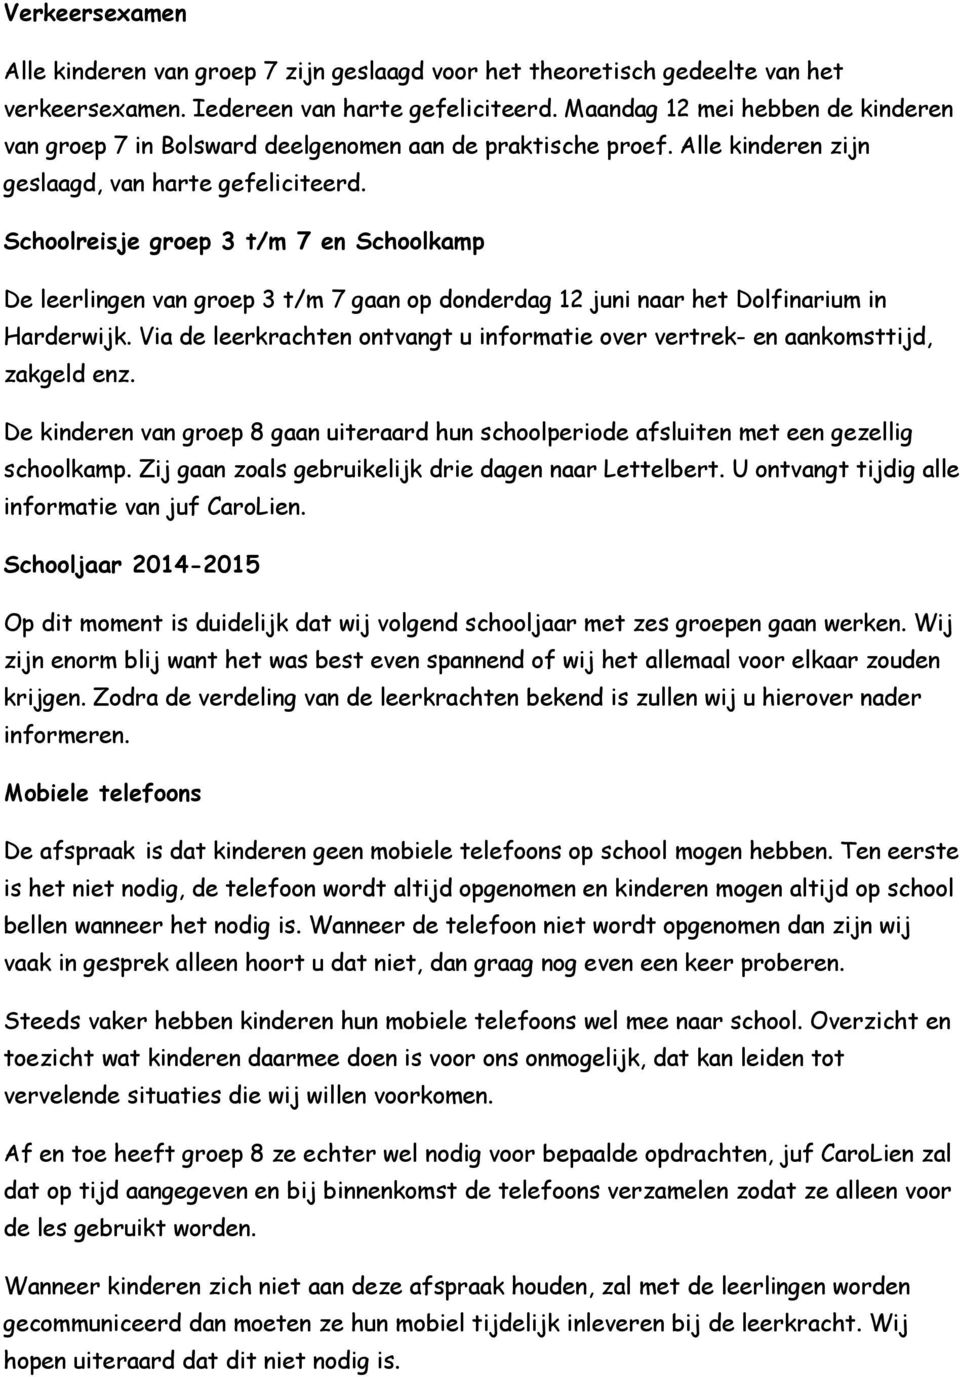 Schoolreisje groep 3 t/m 7 en Schoolkamp De leerlingen van groep 3 t/m 7 gaan op donderdag 12 juni naar het Dolfinarium in Harderwijk.